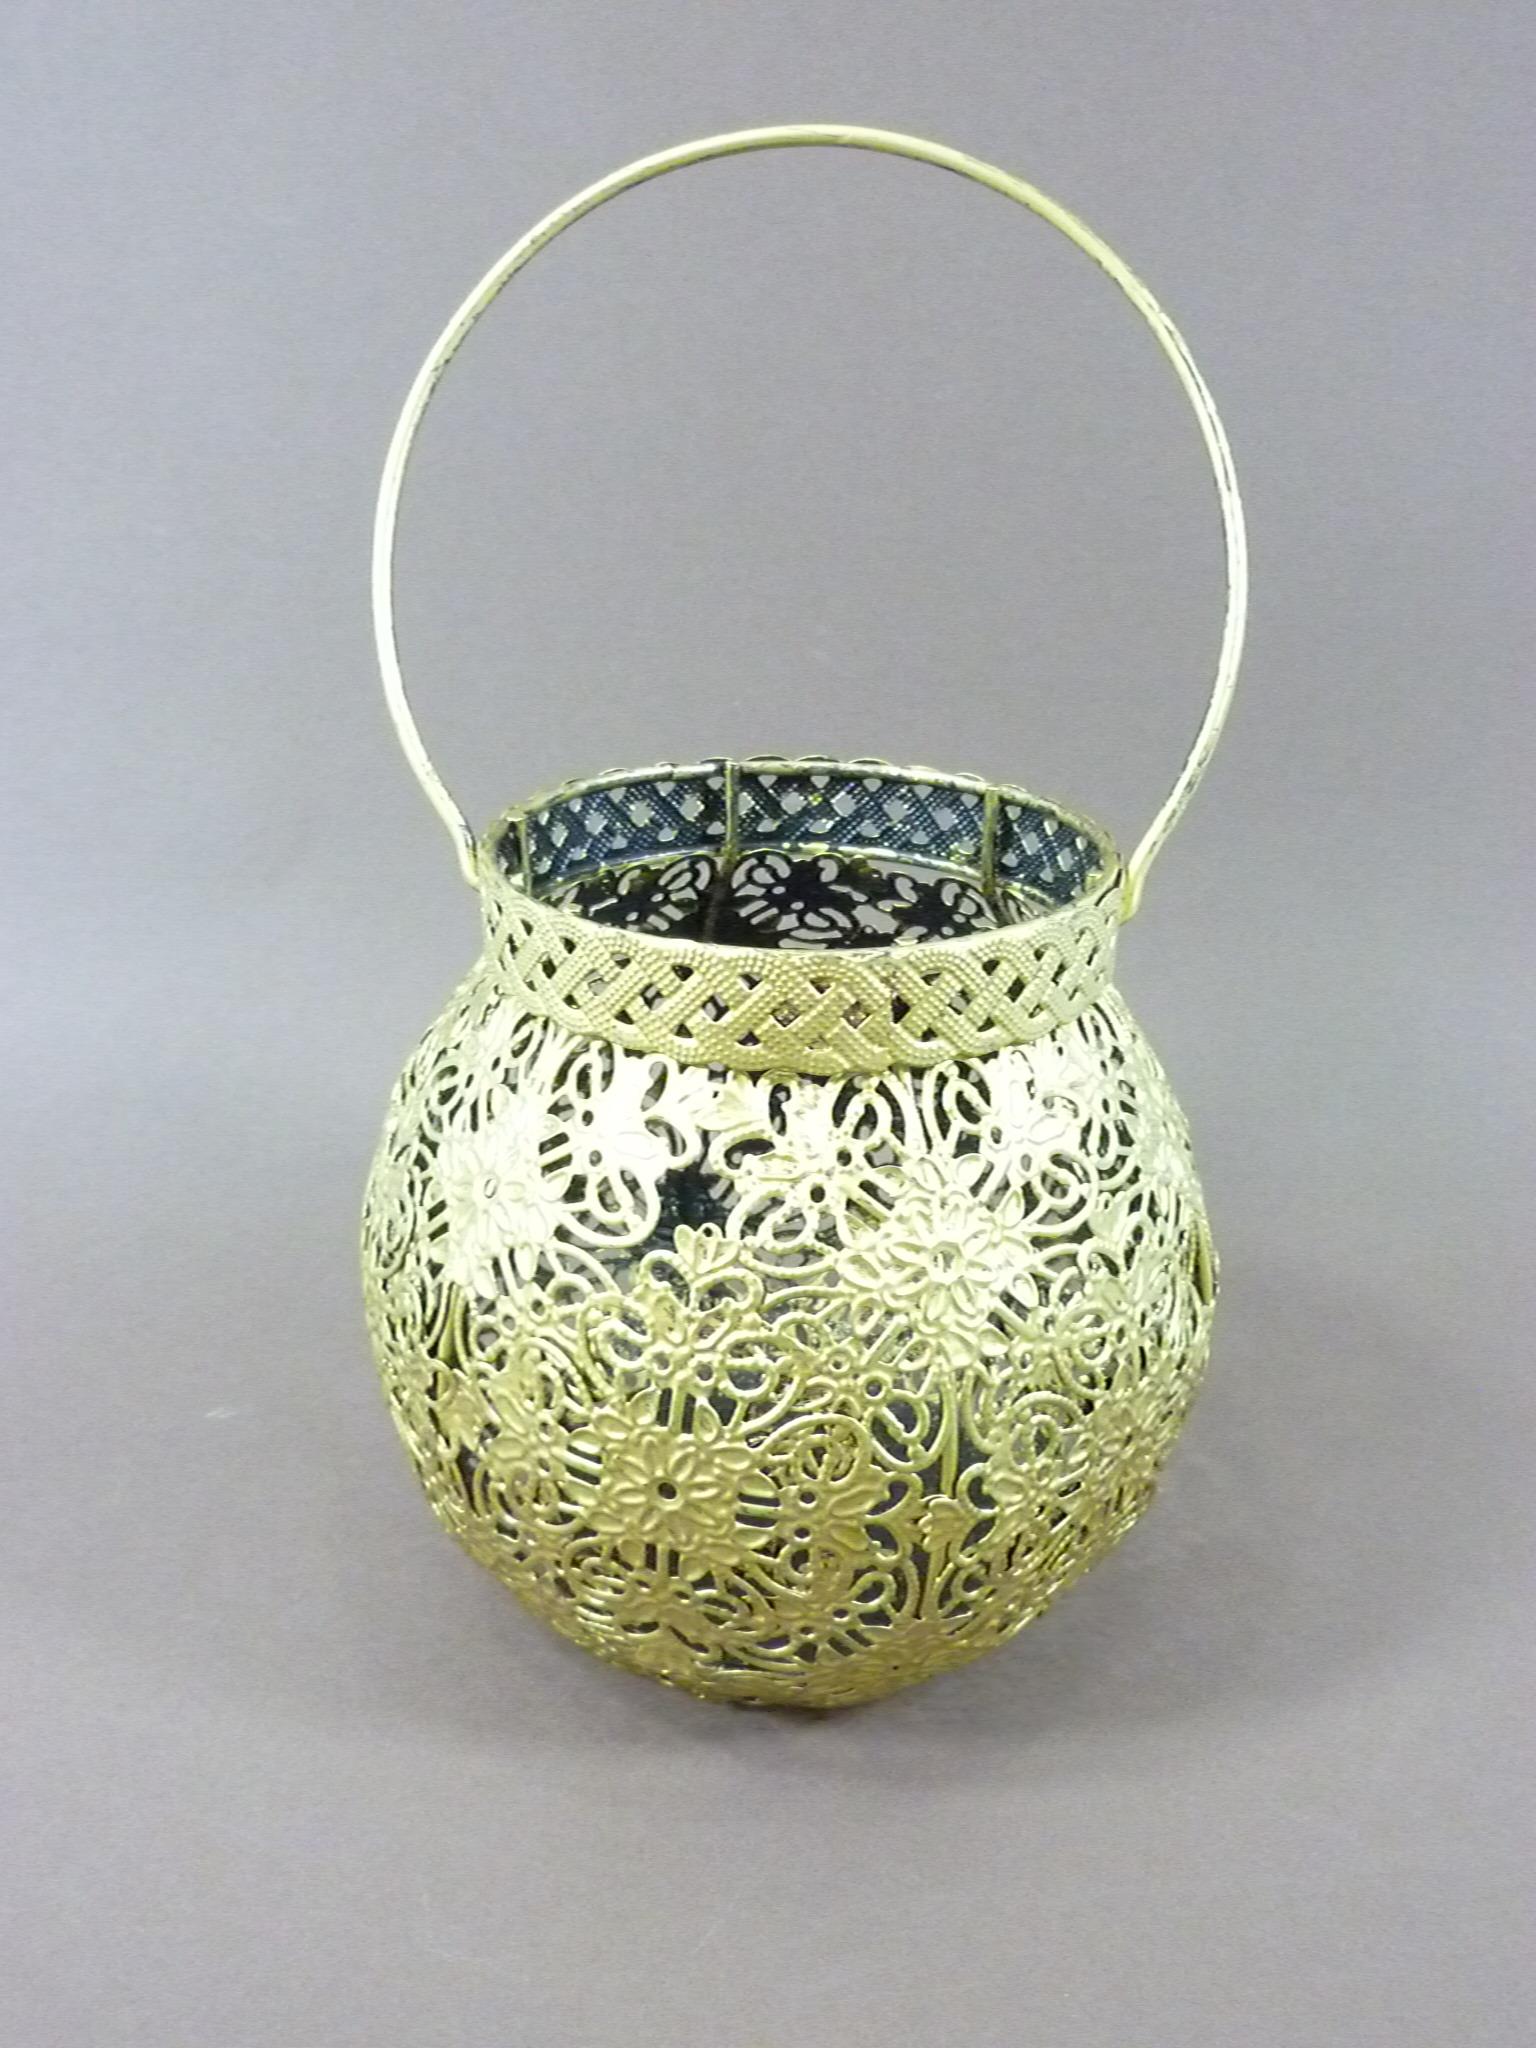 Orientalisches Windlicht Metall mit Bügel Laterne goldfarbig Teelichthalter